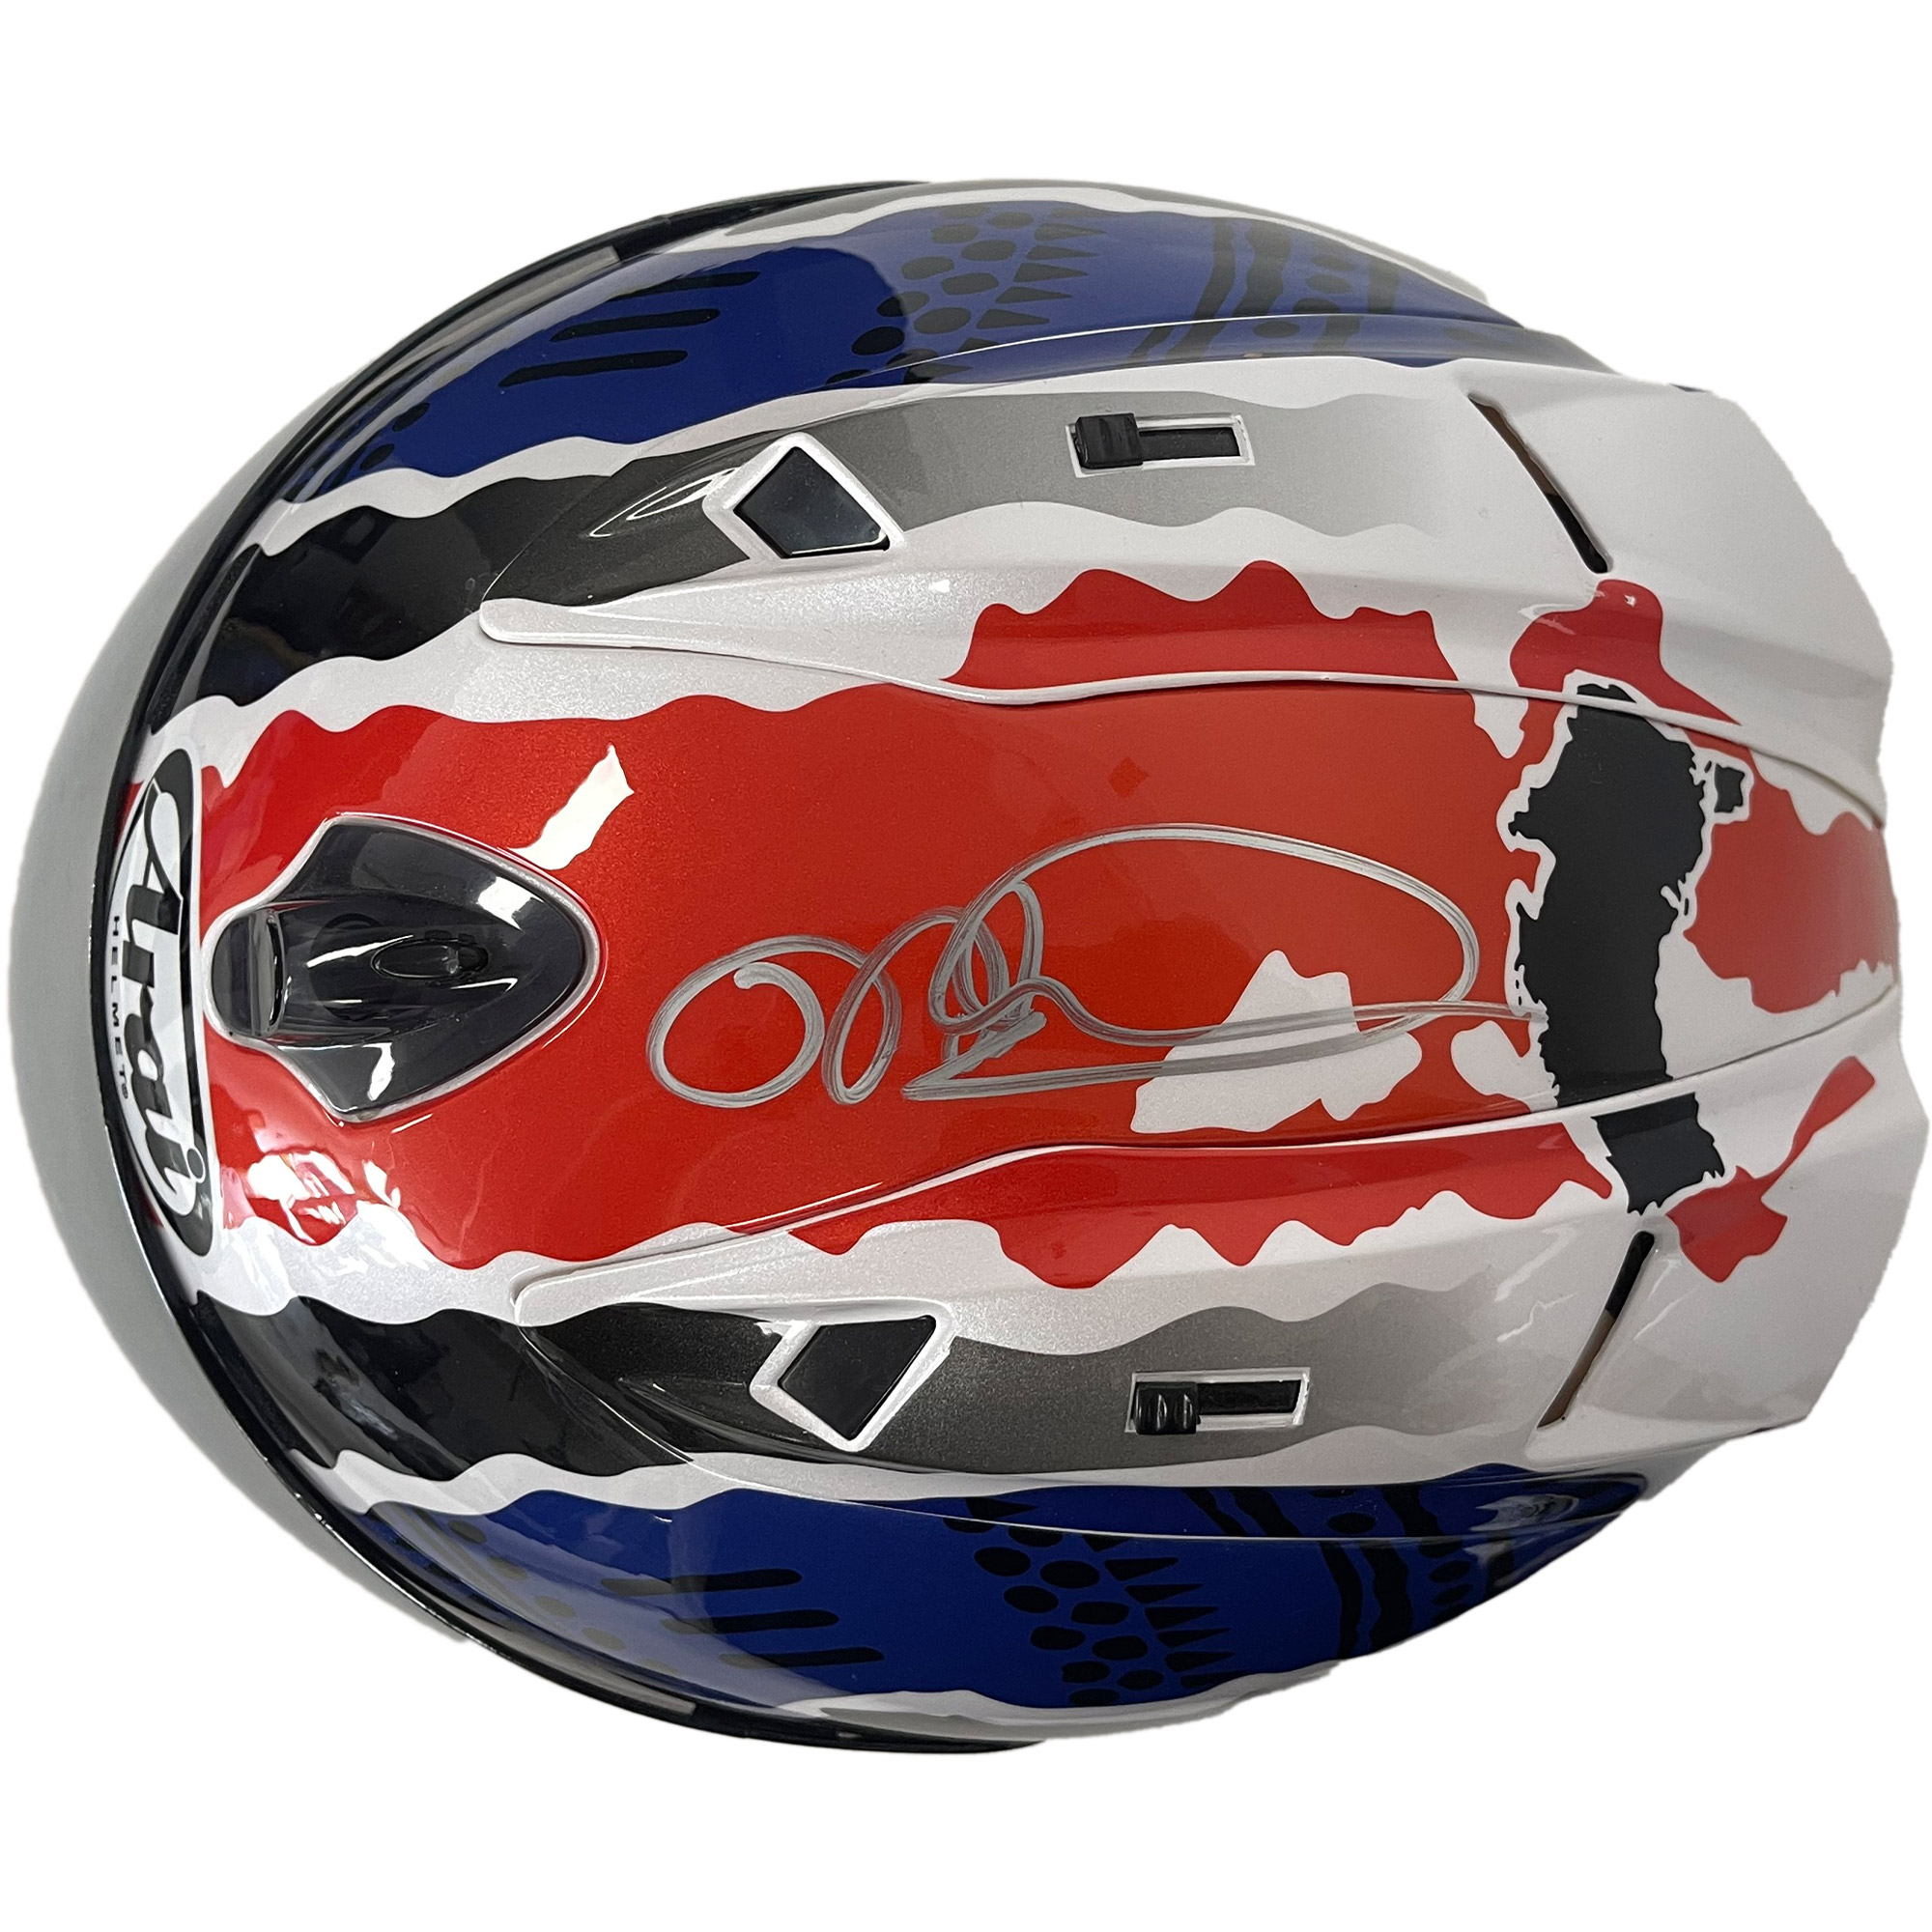 Moto GP – MICK DOOHAN Hand Signed Helmet